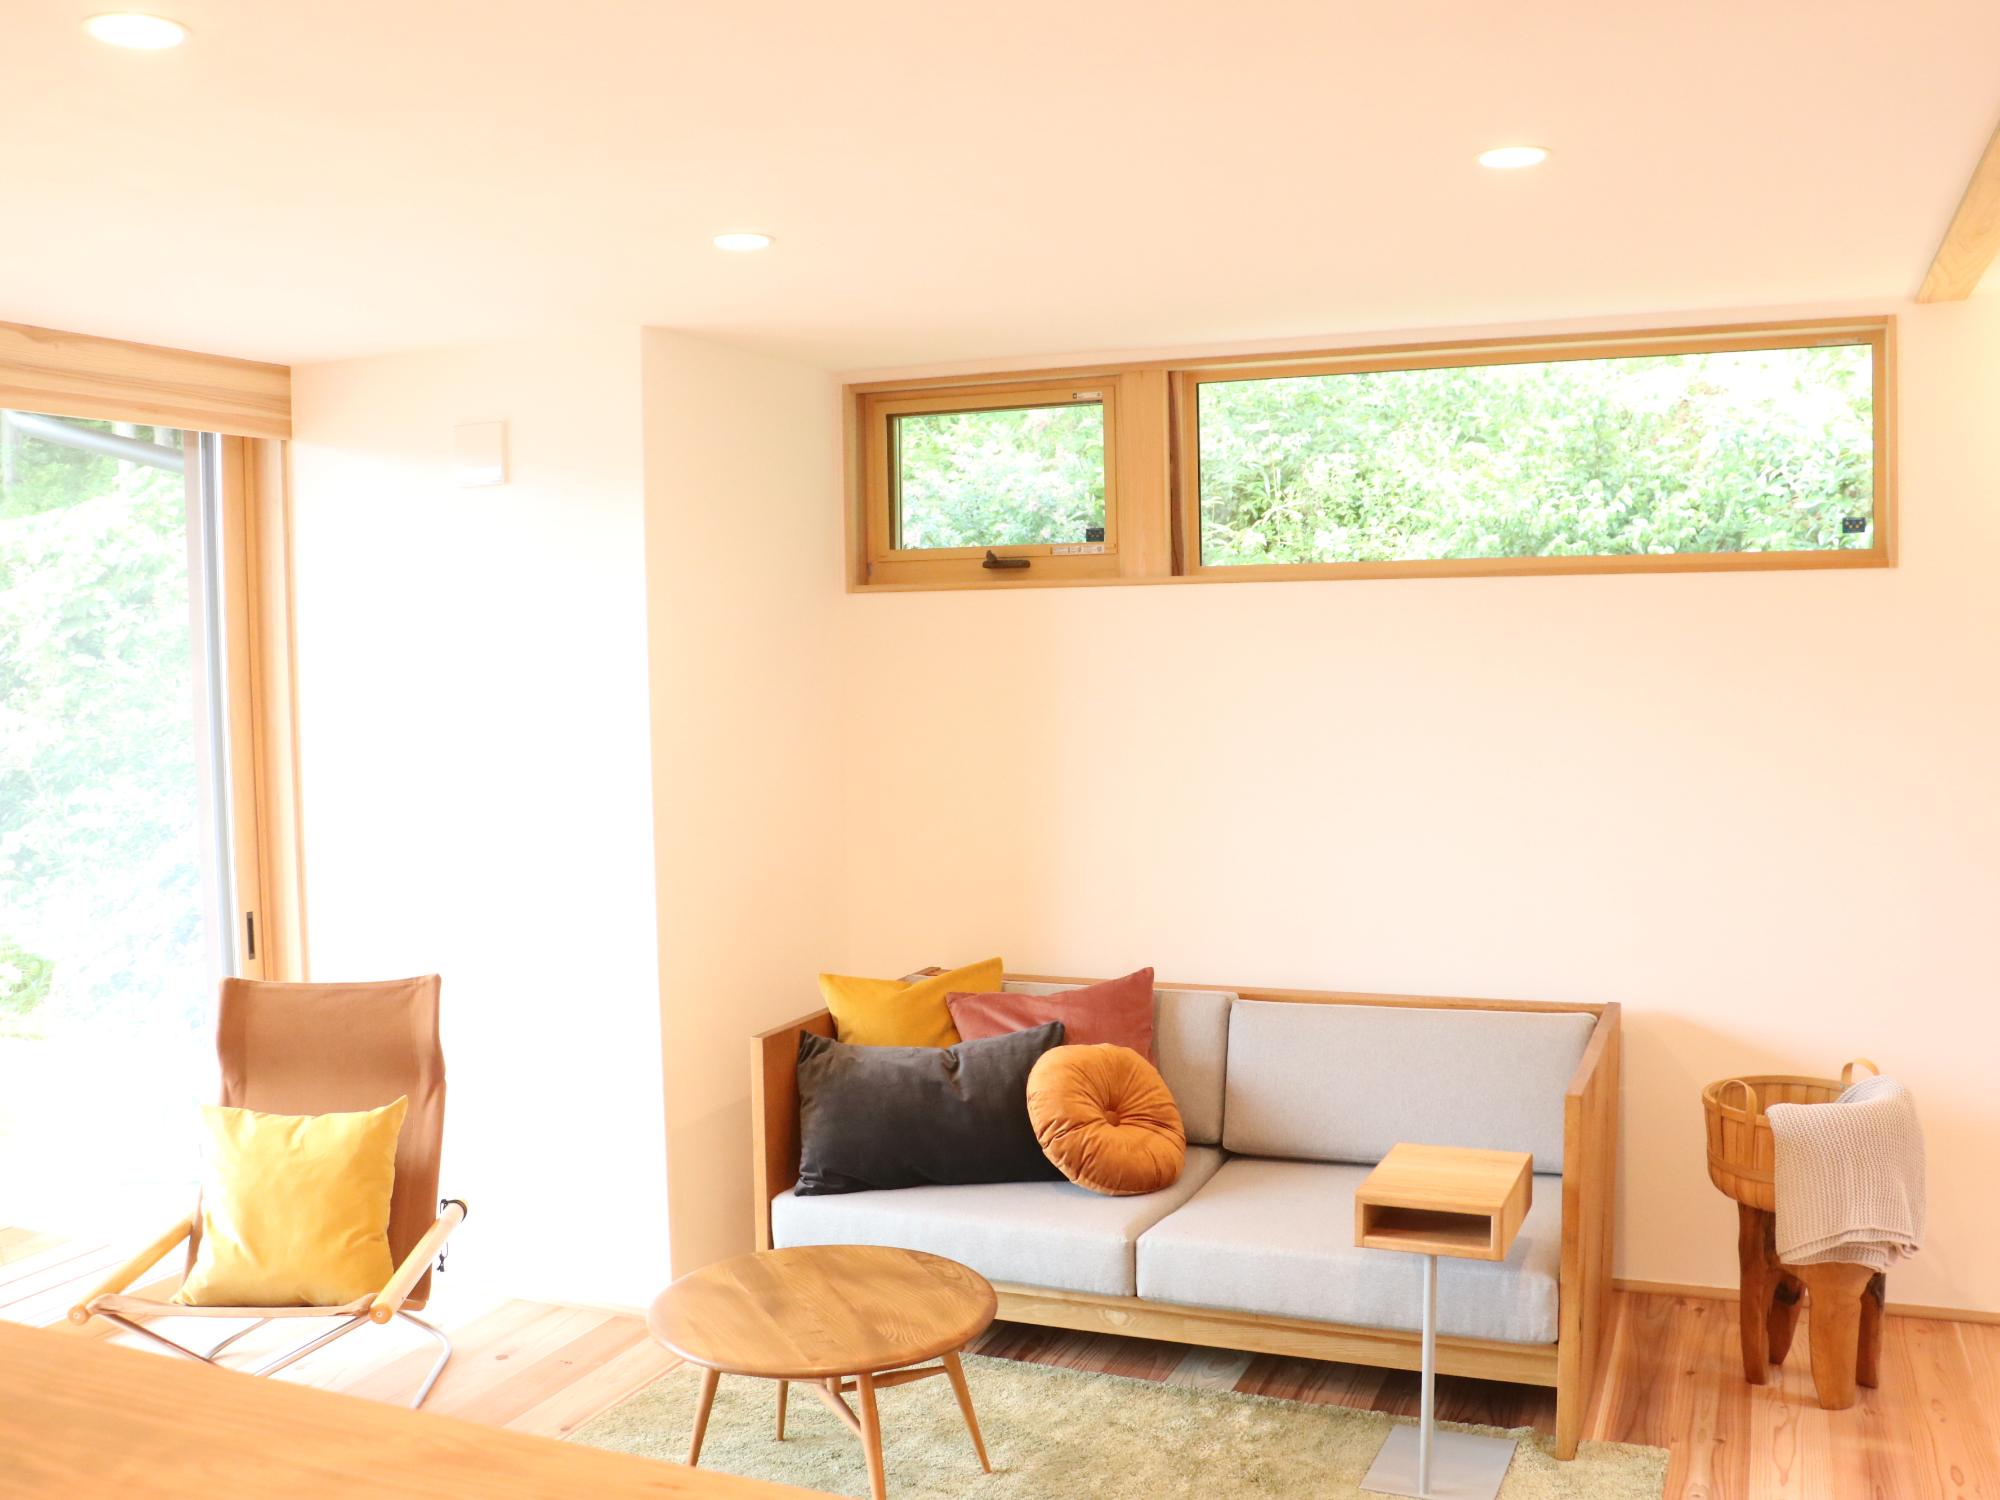 丹波篠山の家モデルハウスの内装。ラグの上にミニテーブル。ソファやいすが並んでいる。